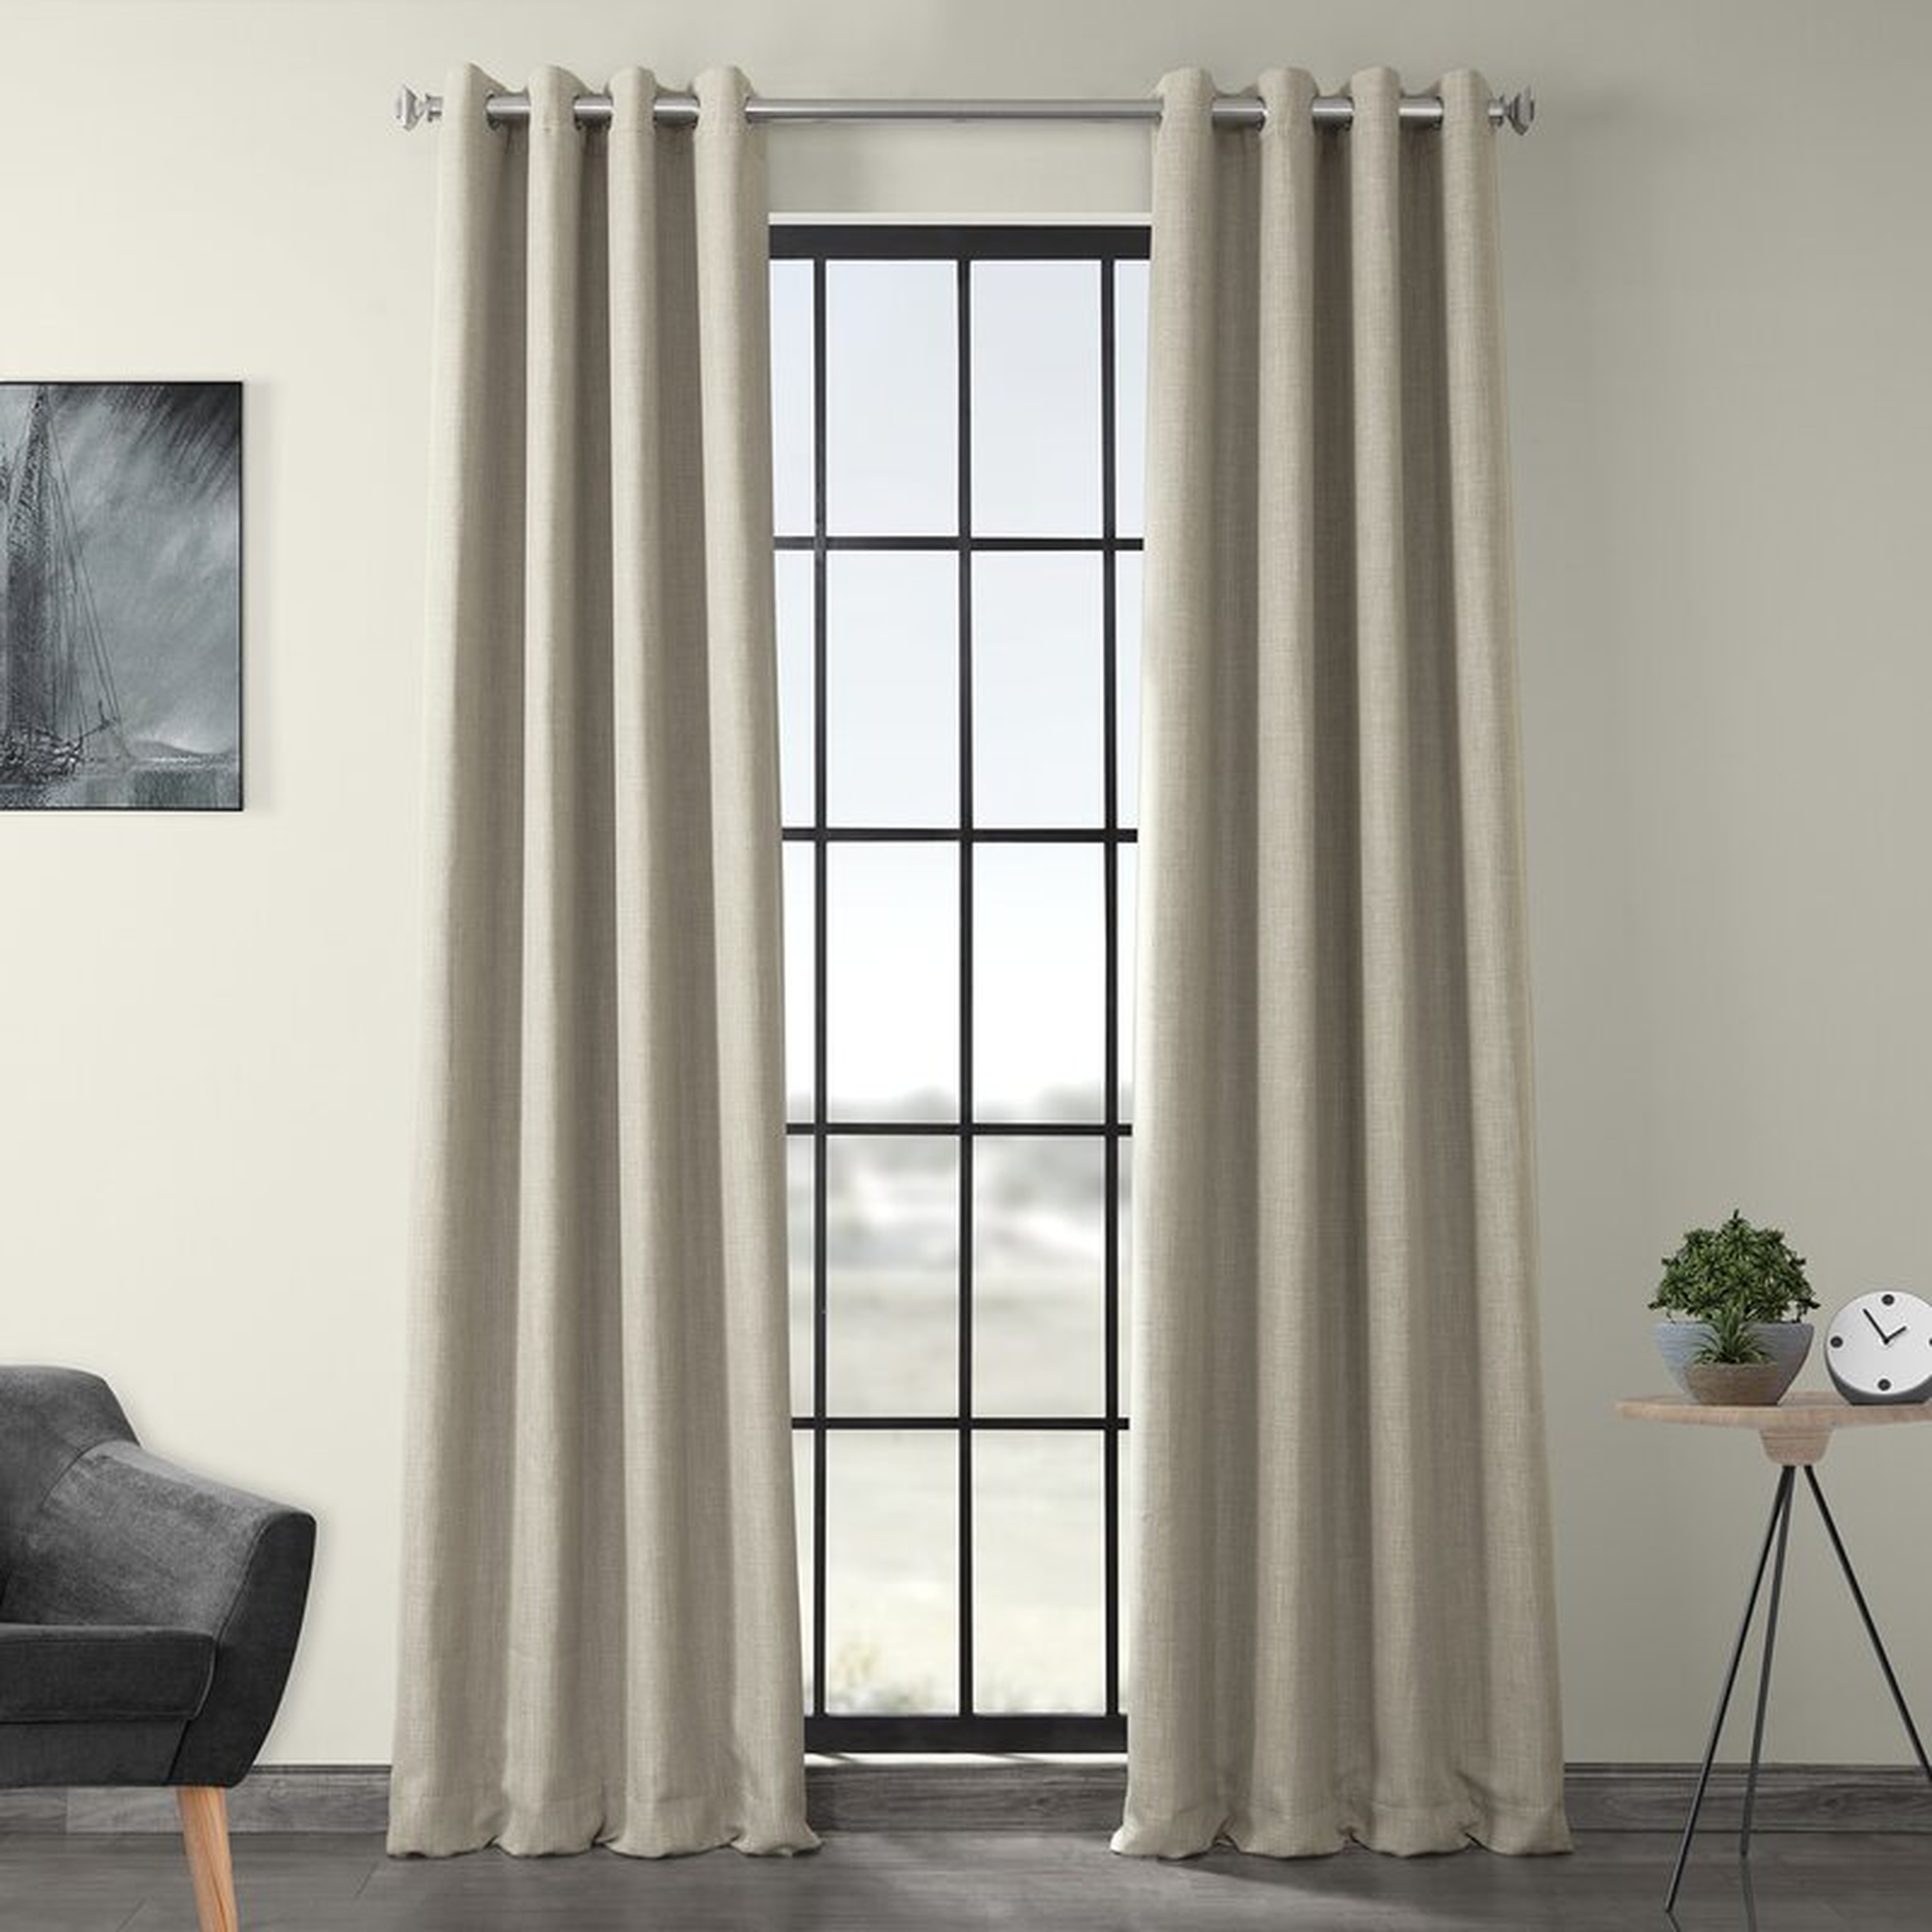 LaCrosse Room Darkening Grommet Single Curtain Panel - Oatmeal, 50" W x 120" L - Wayfair